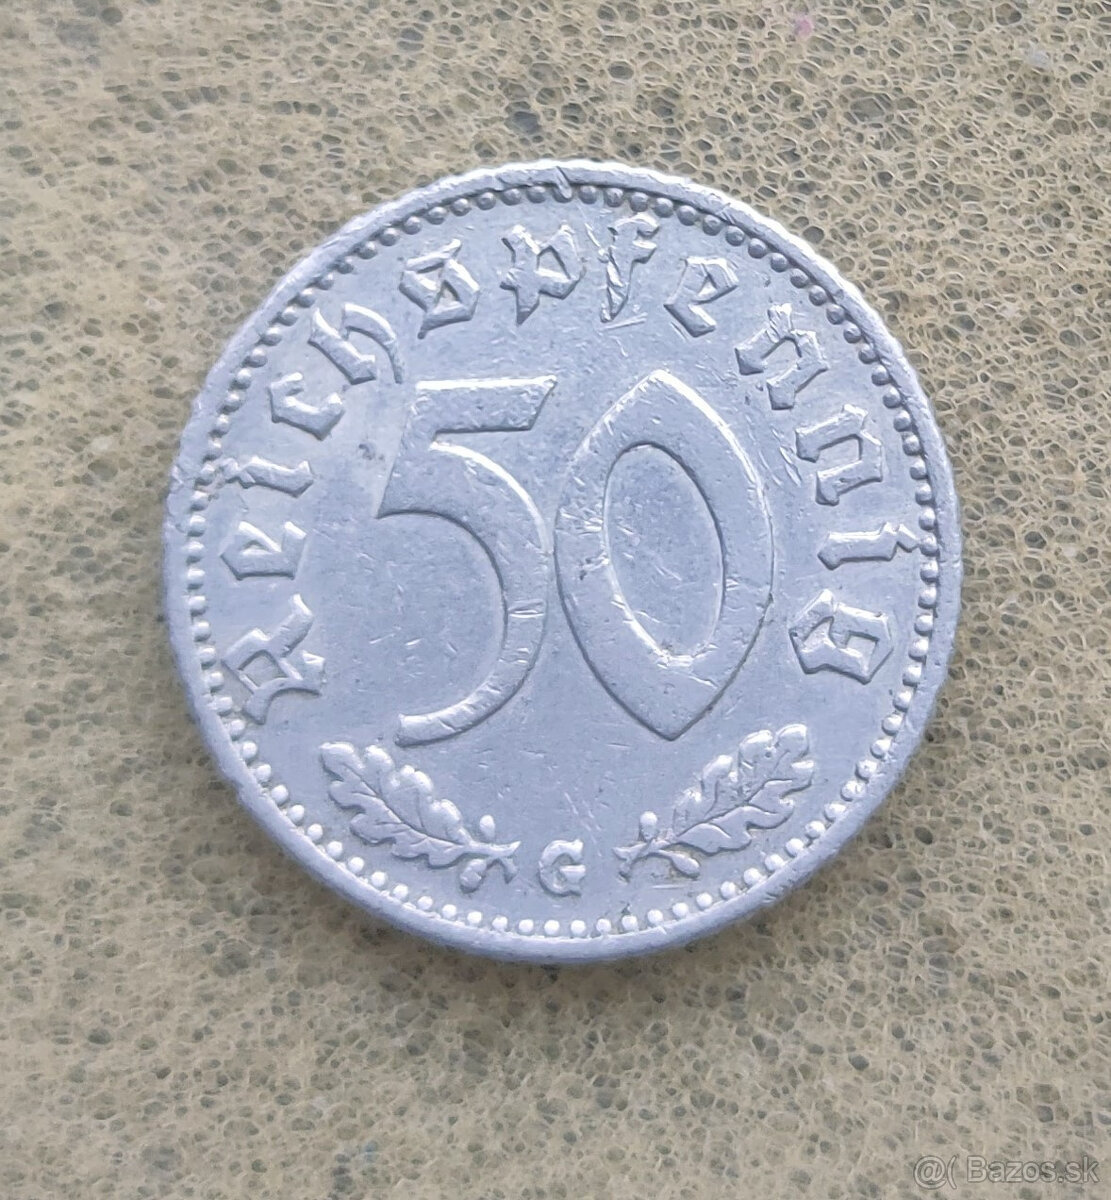 50 Reichspfennig 1944 G - Vzacny rocnik